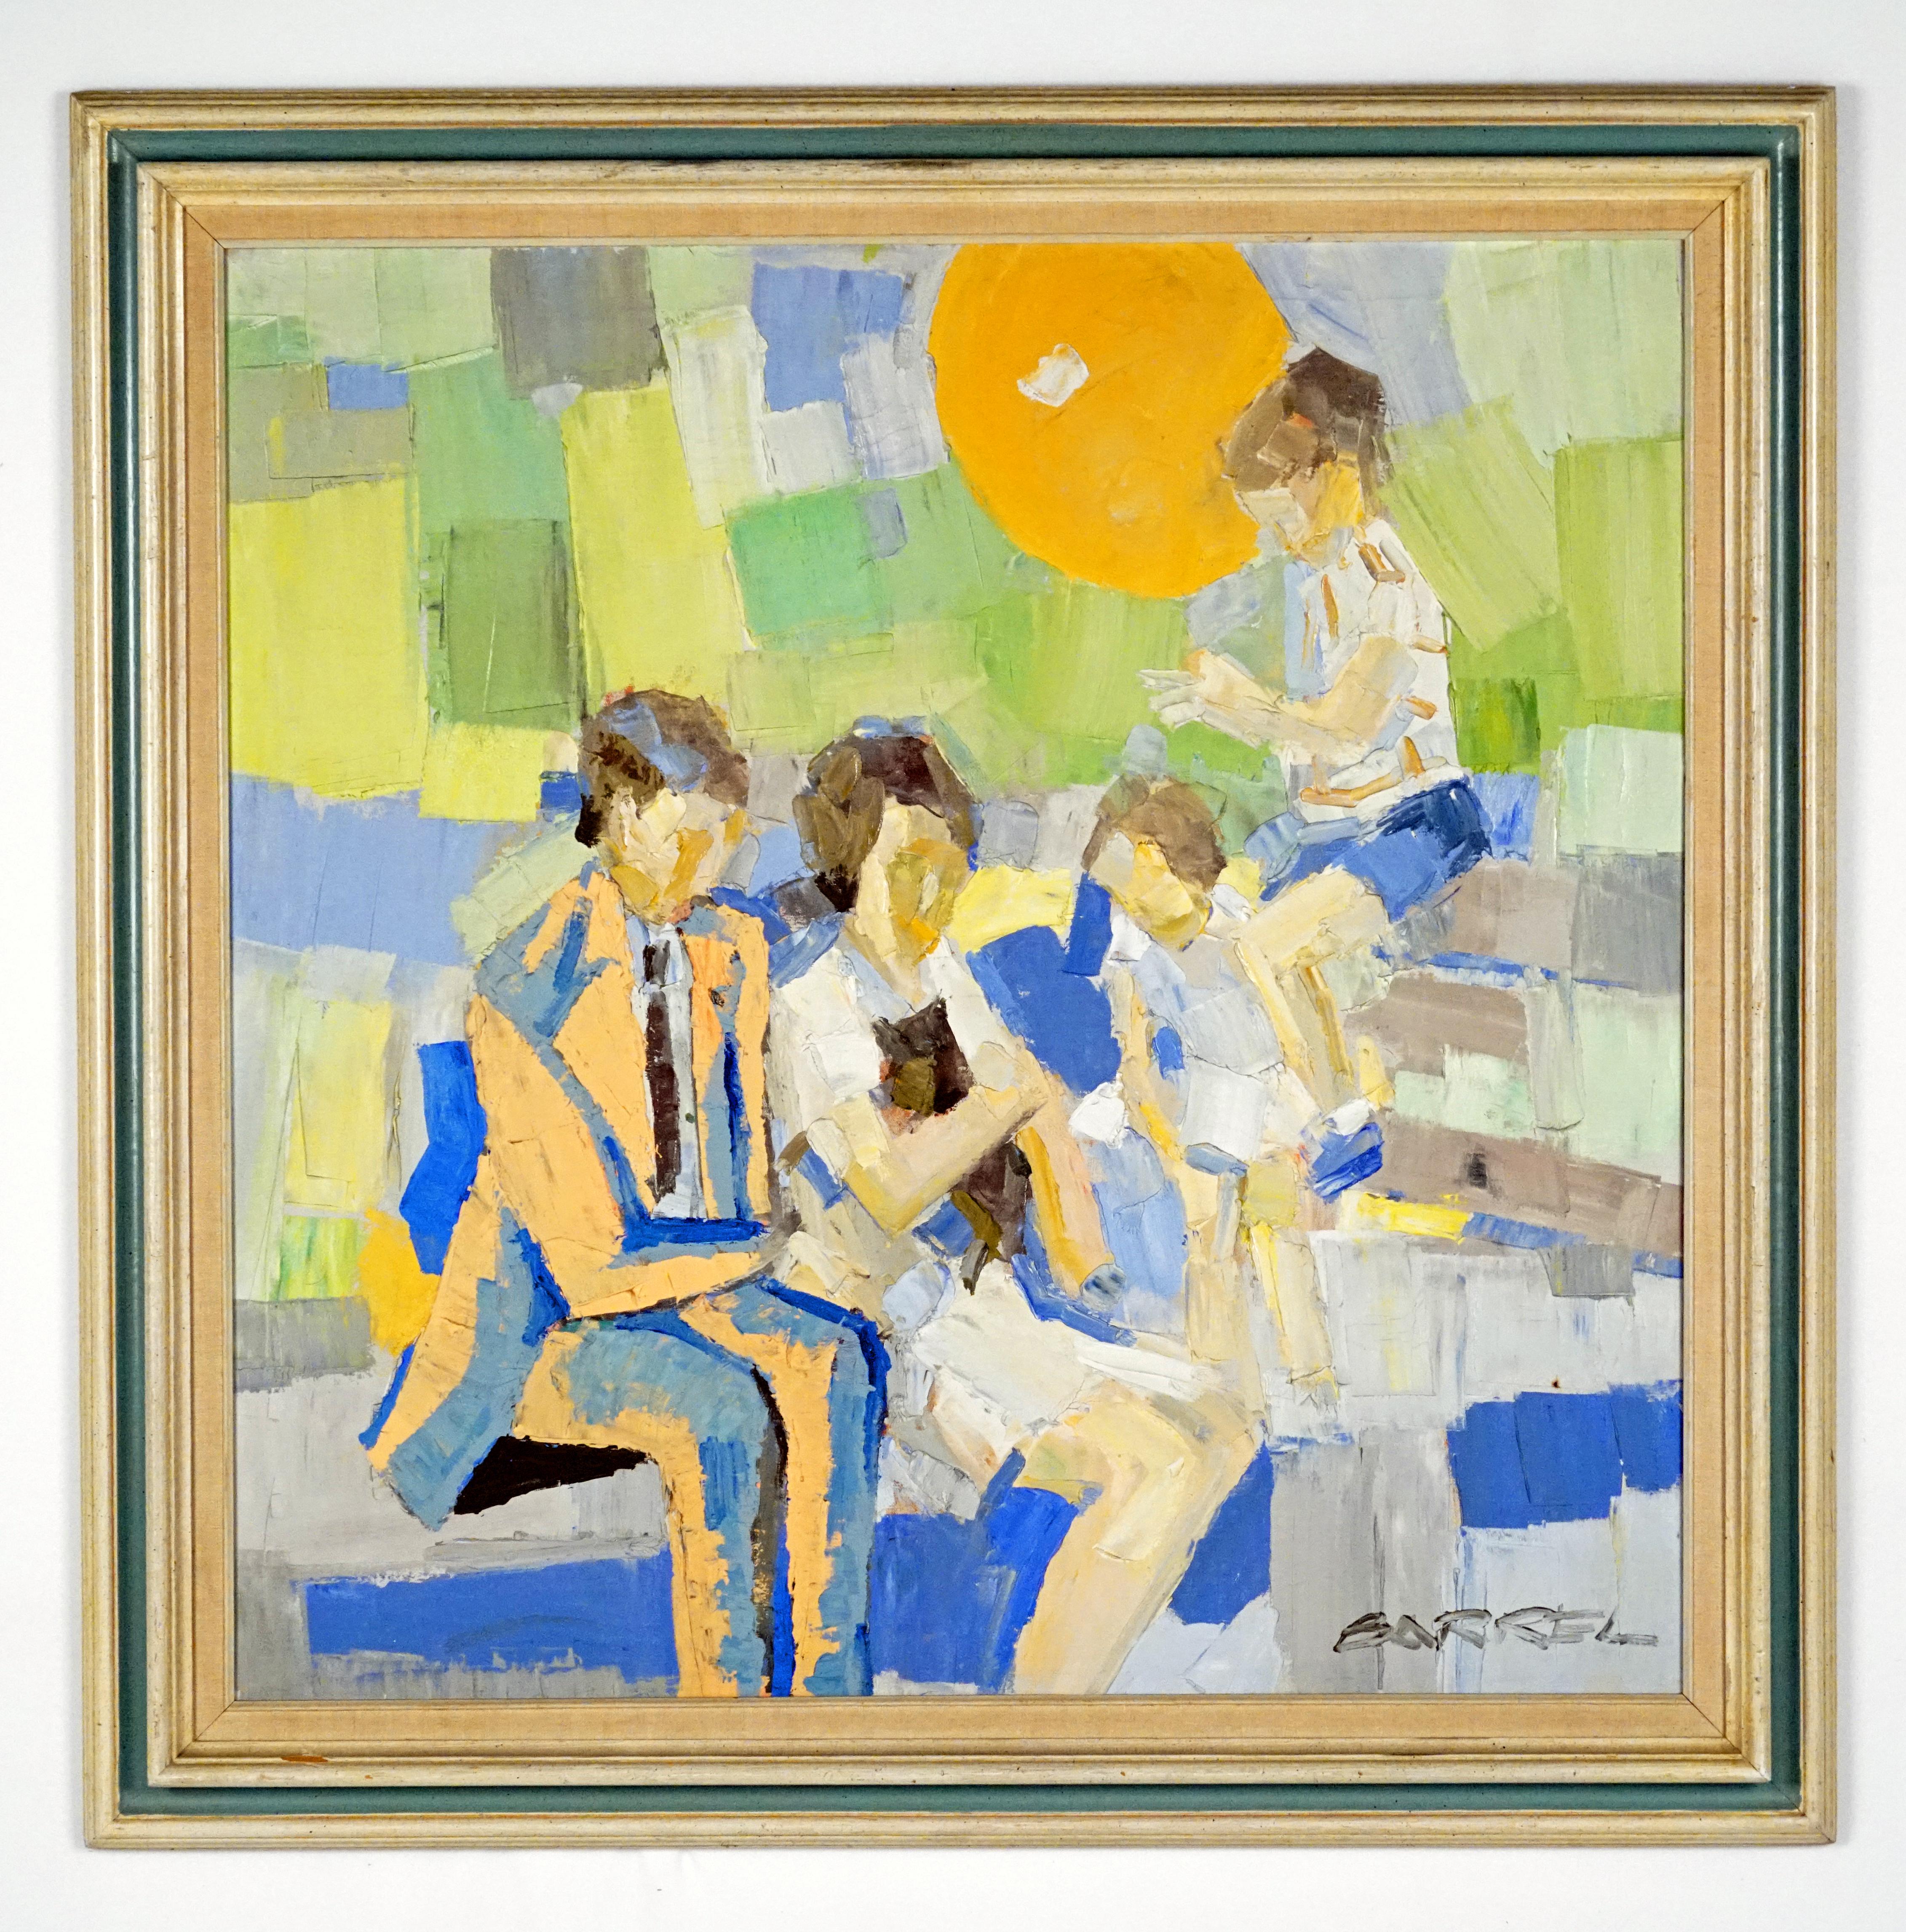 Familienfamilie in einem Park – Painting von Italo George Botti